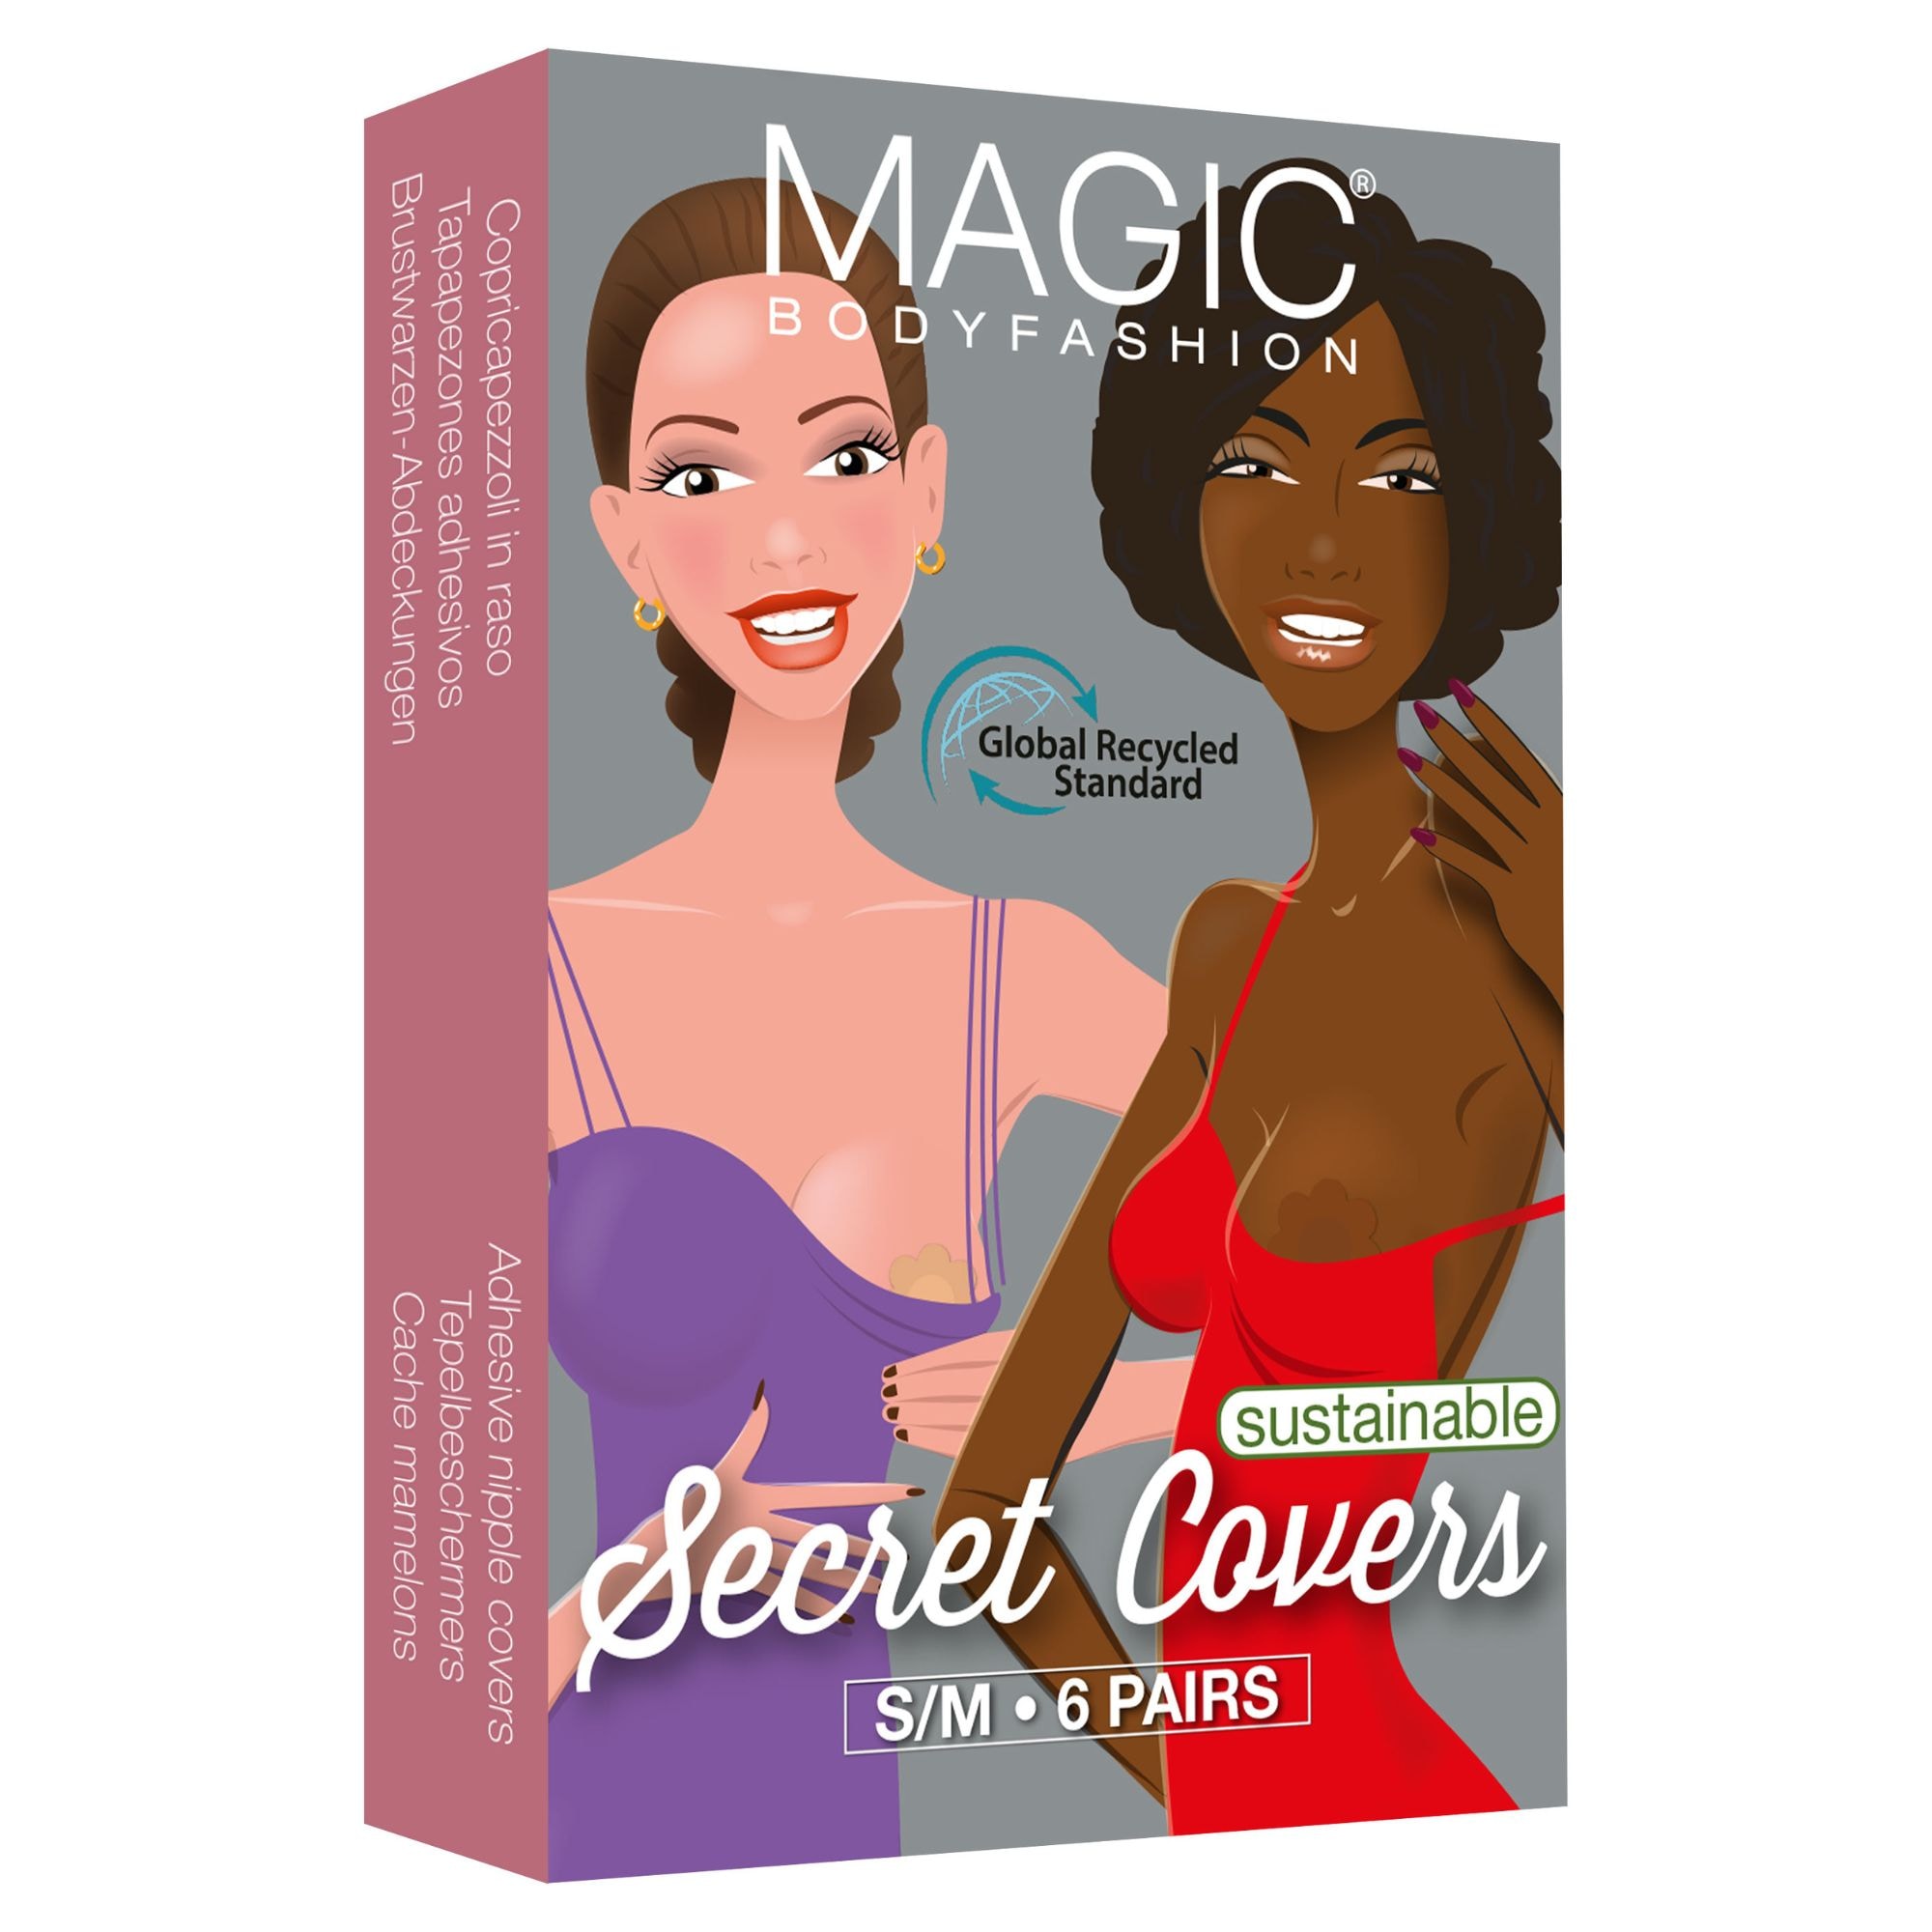 Secret Covers